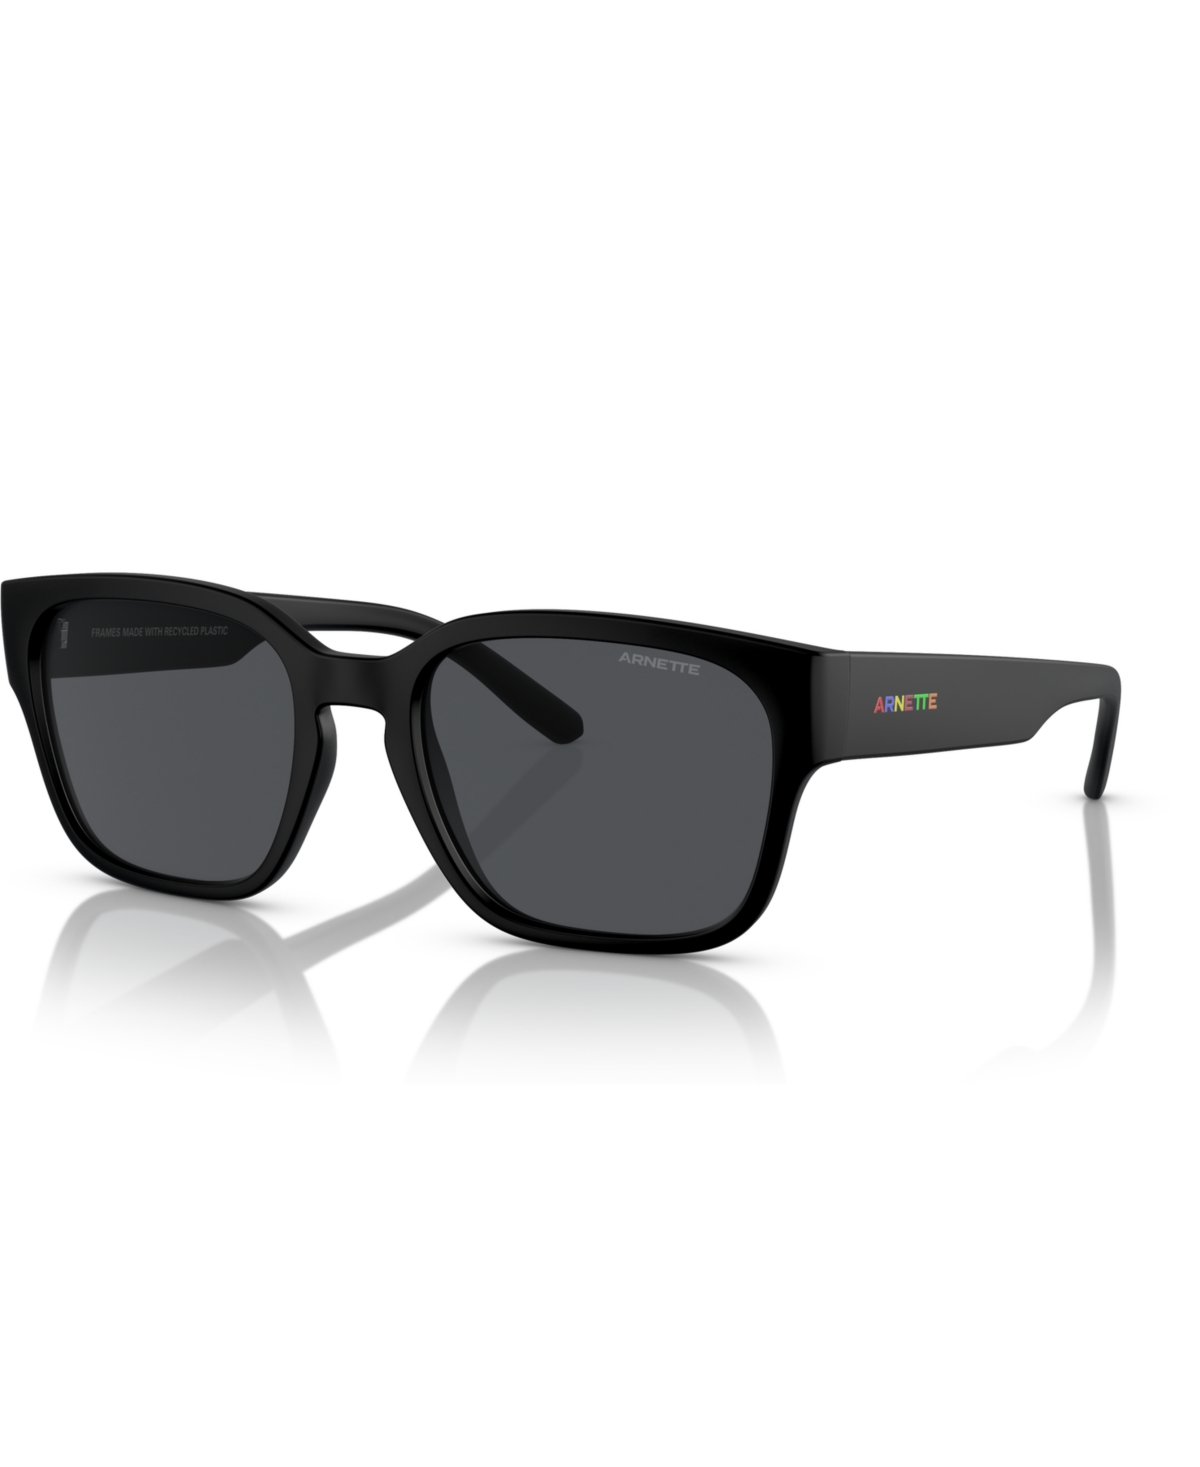 Men's Hamie Sunglasses AN4325 - Matte Black